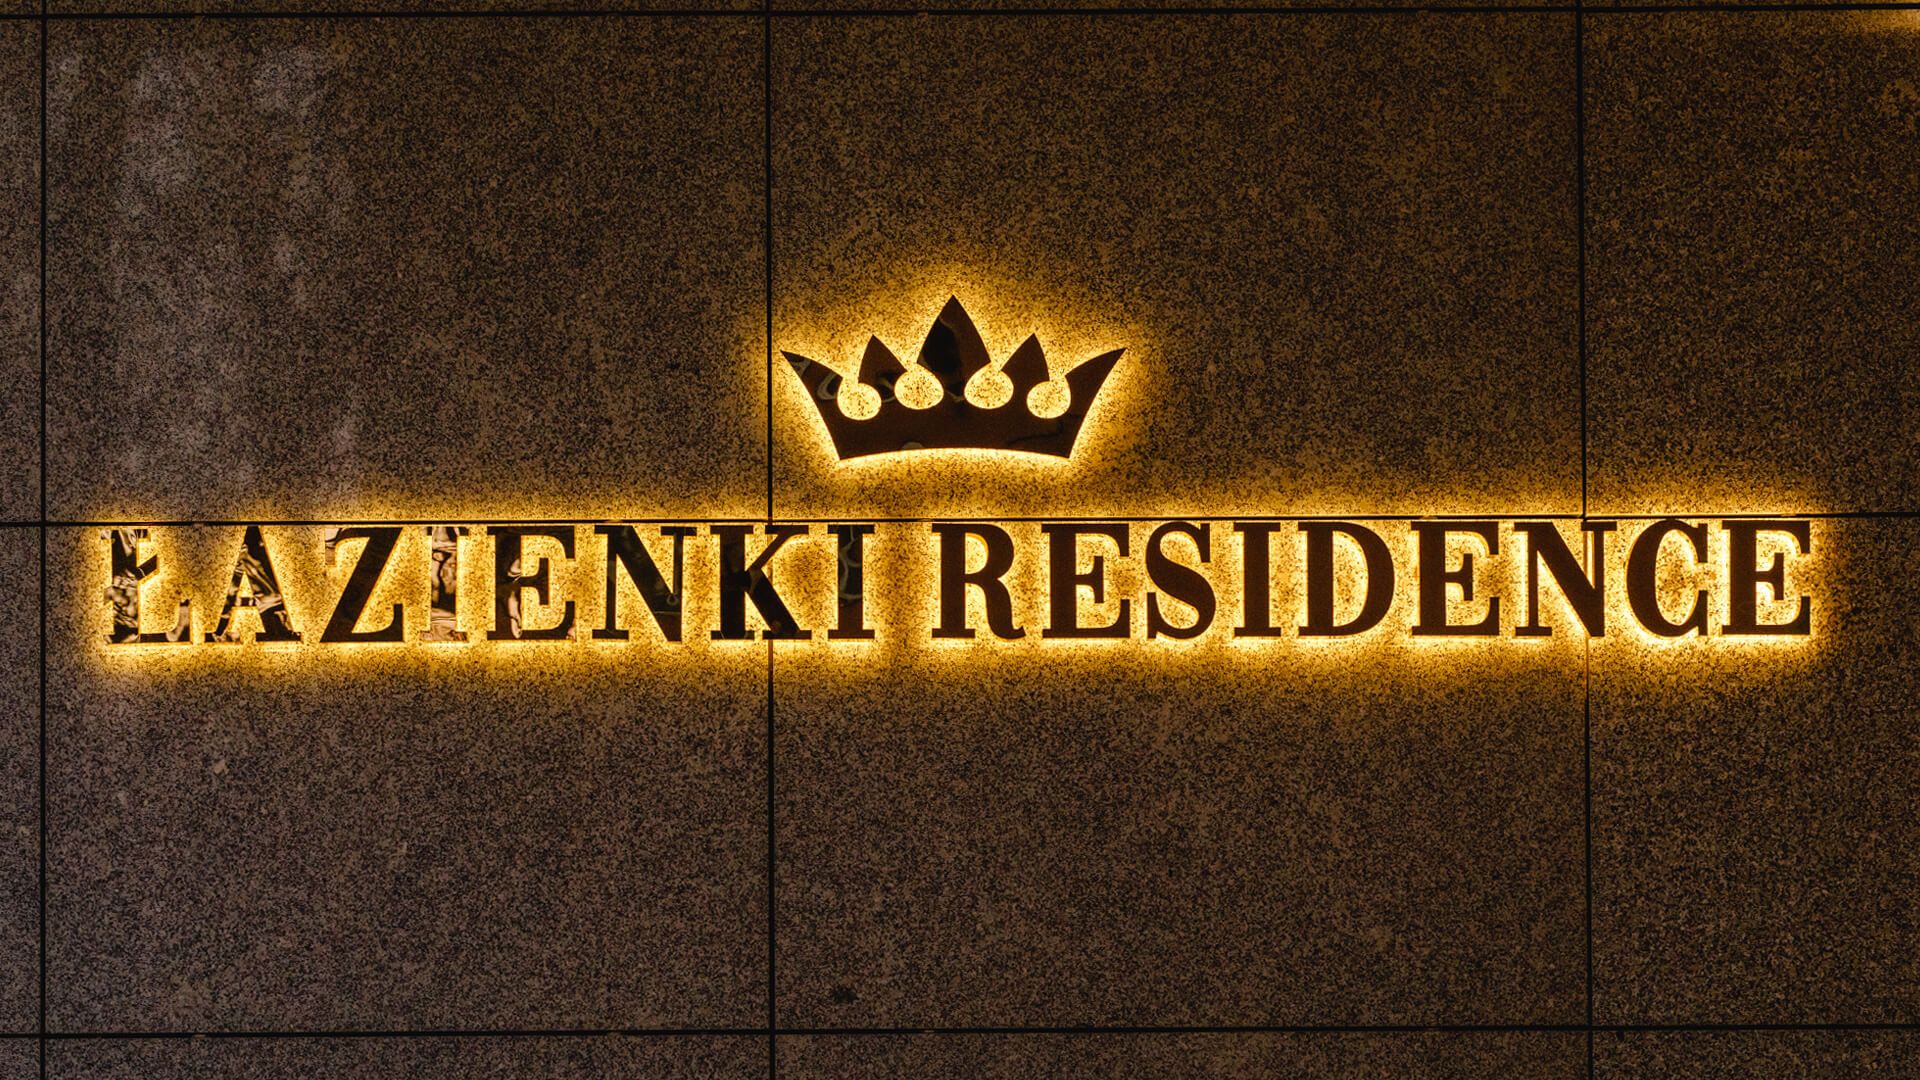 Łazienki Residence - Napis Łazienki Residence wykonany z blachy nierdzewnej w kolorze złotym, podświetlane LED tyłem na ściane, z koroną w logo.